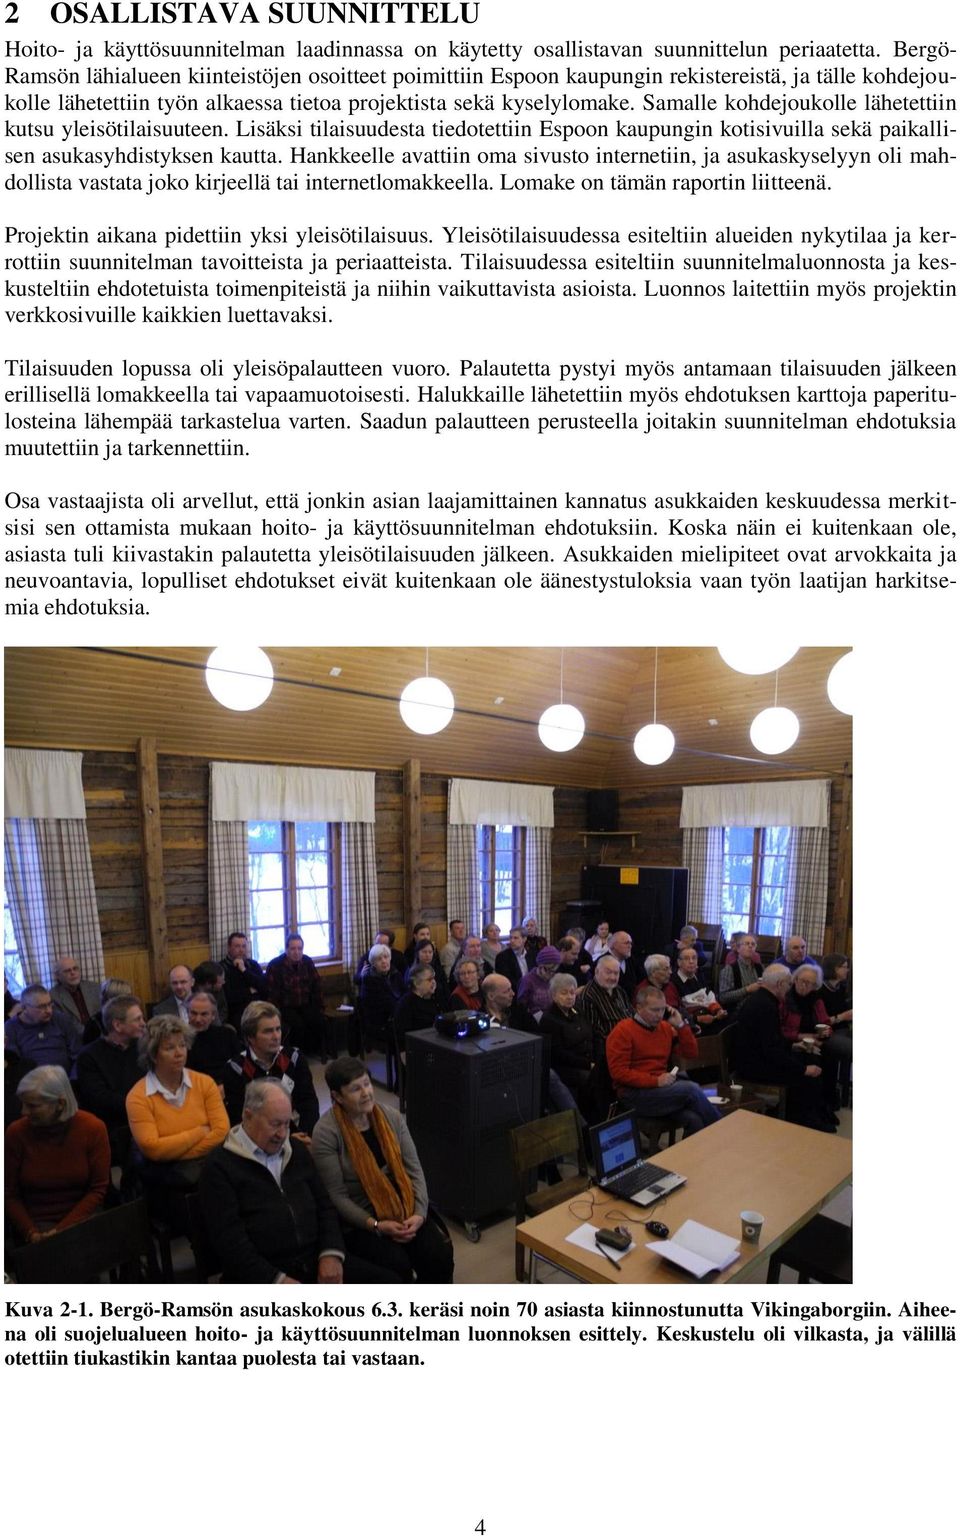 Samalle kohdejoukolle lähetettiin kutsu yleisötilaisuuteen. Lisäksi tilaisuudesta tiedotettiin Espoon kaupungin kotisivuilla sekä paikallisen asukasyhdistyksen kautta.